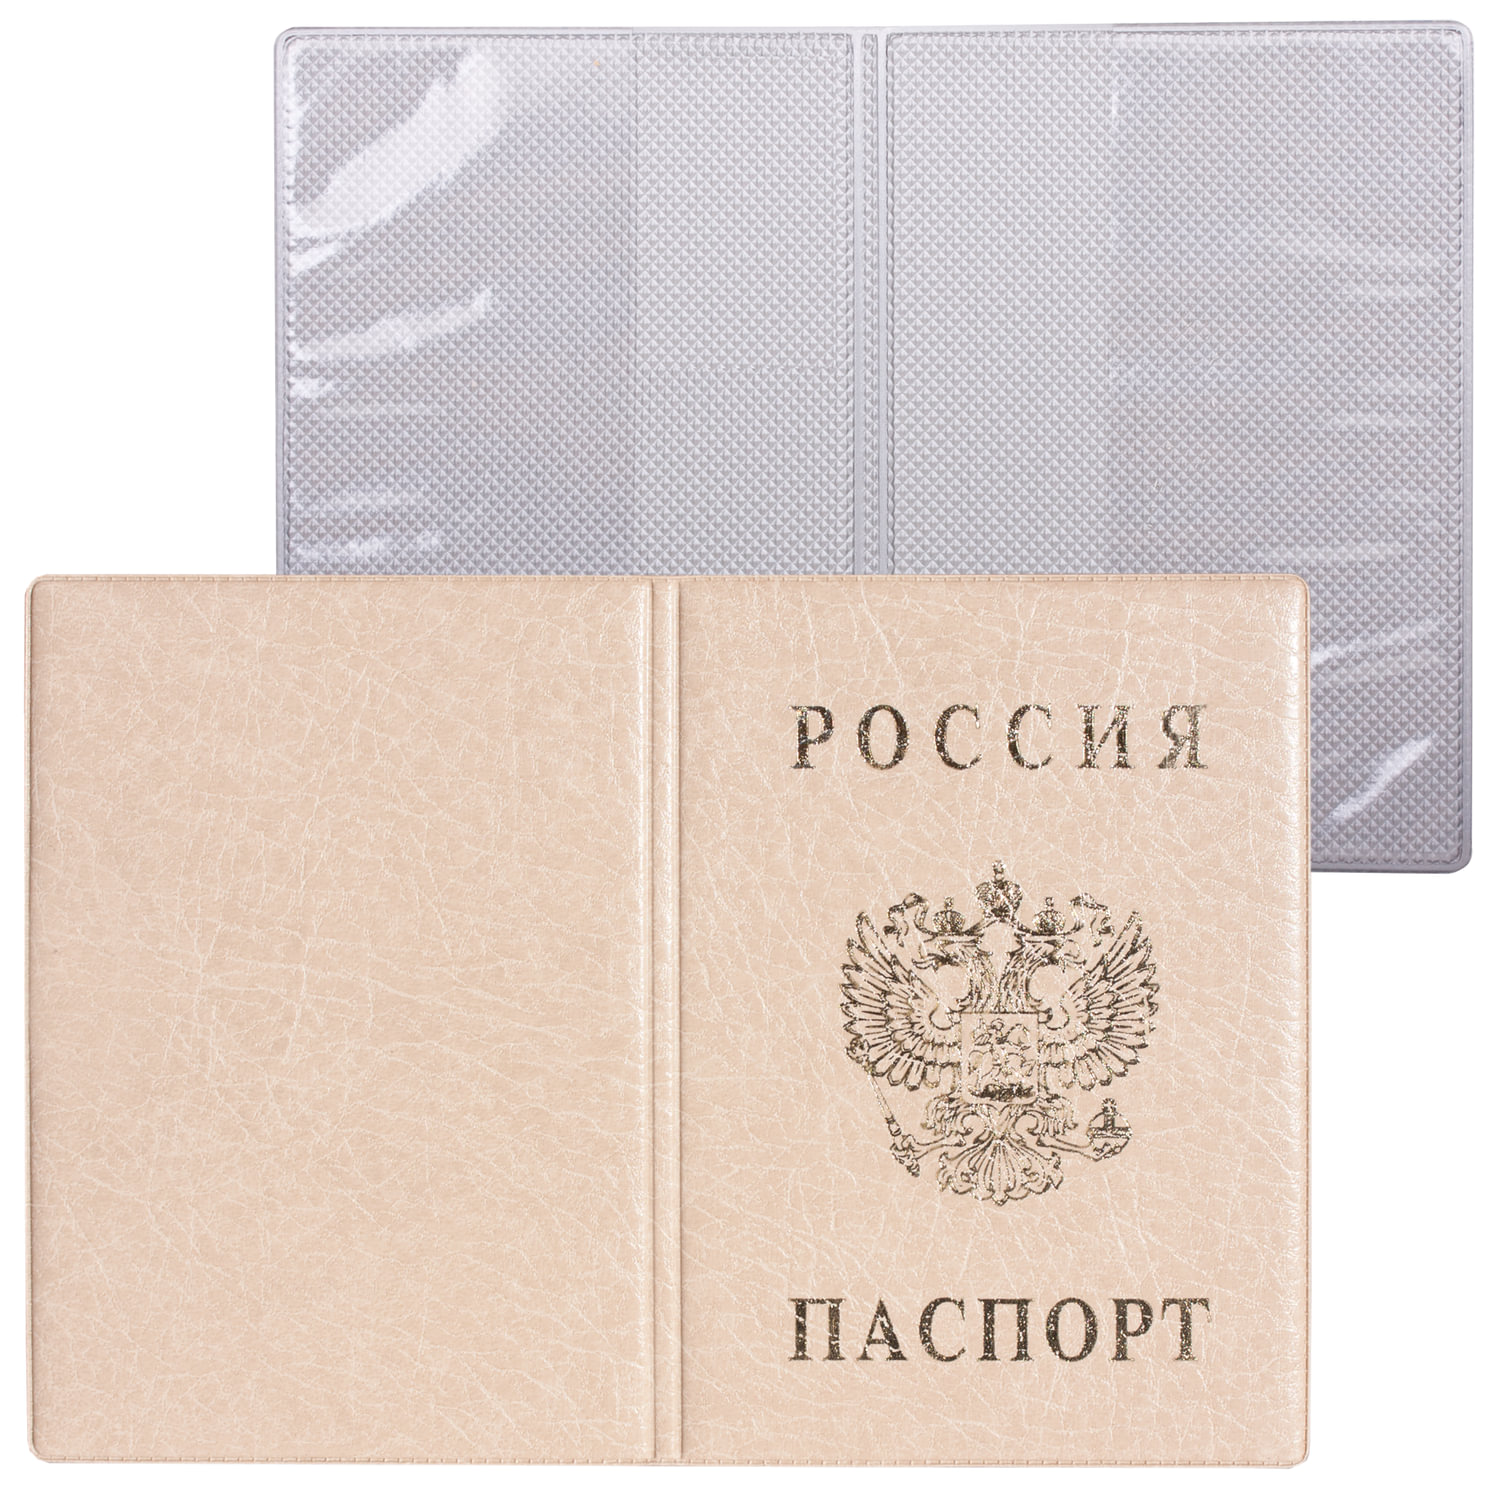 Обложка для паспорта с гербом, ПВХ, печать золотом, бежевая, ДПС, 2203.В-105, (18 шт.)